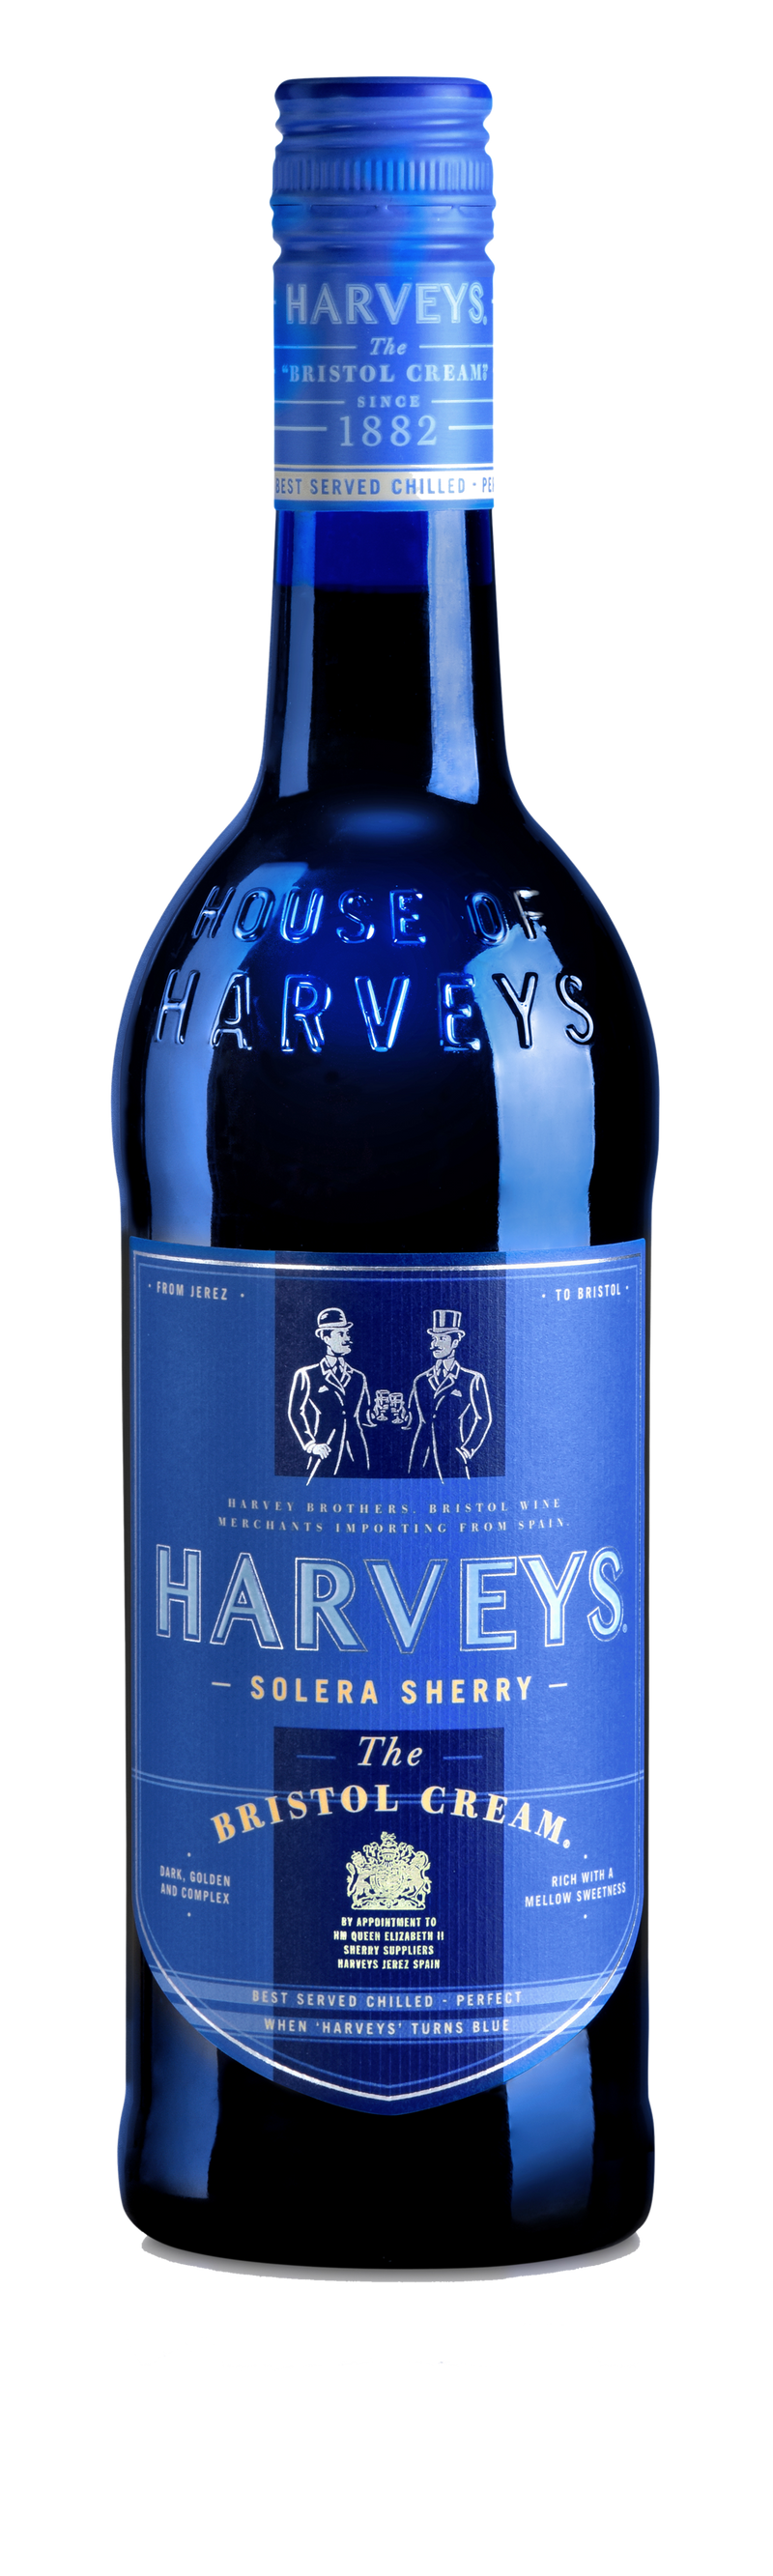 Harveys Bristol Cream- 750ml